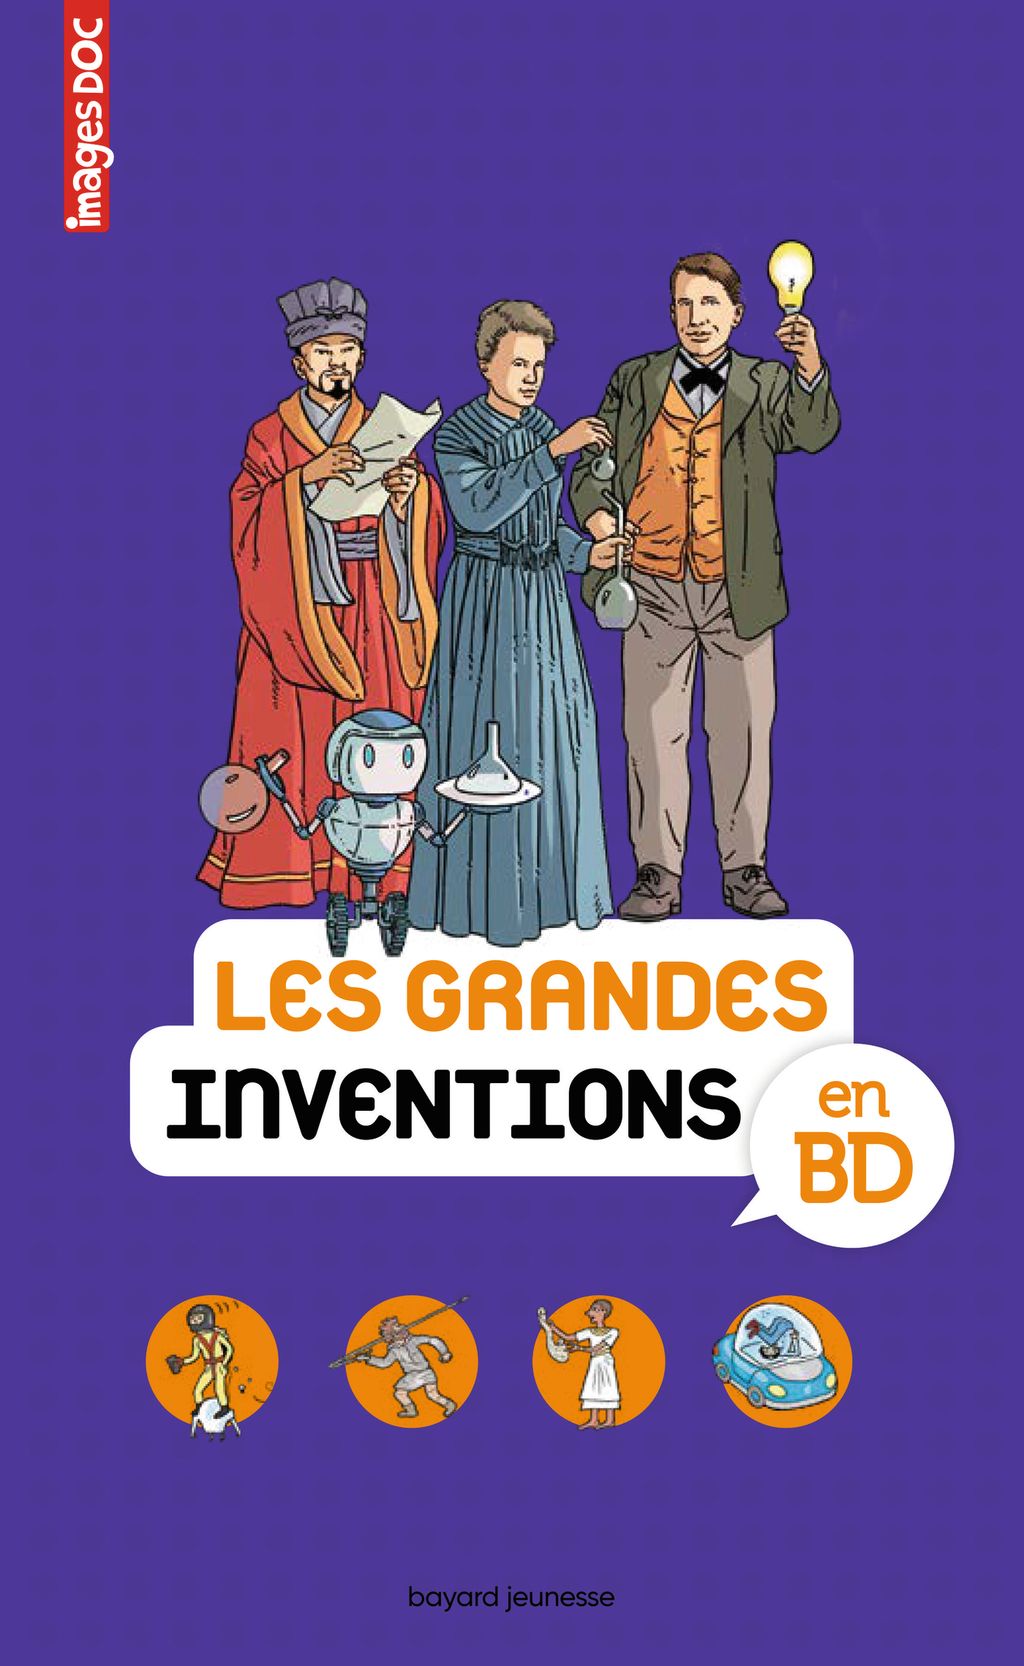 « Les grandes inventions en BD » cover